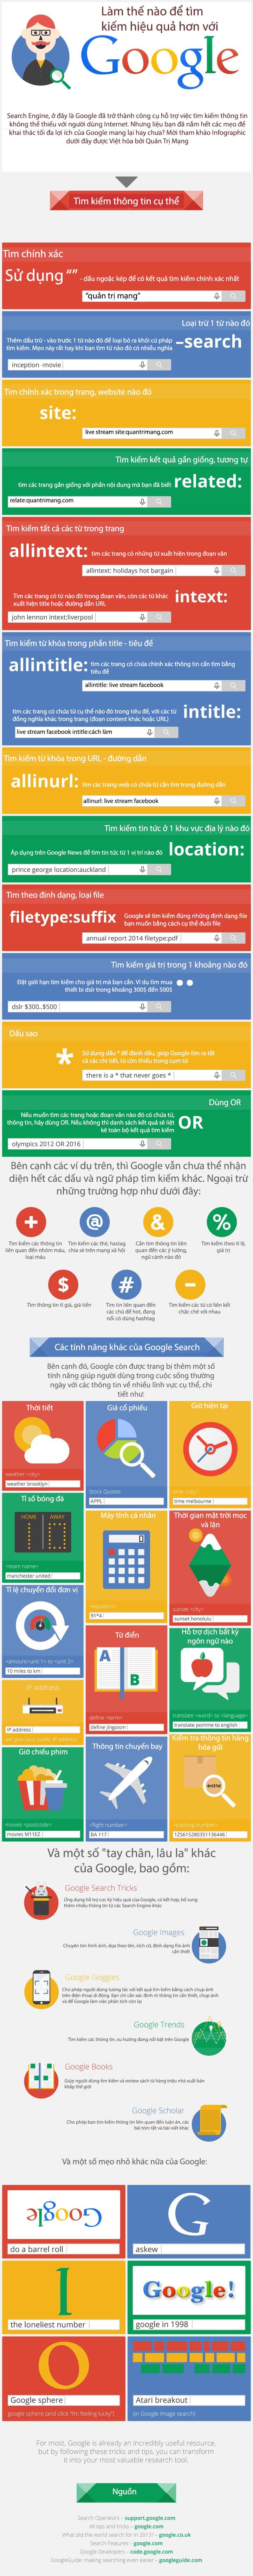 [Infographic] Hướng dẫn tìm kiếm hiệu quả với Google 4